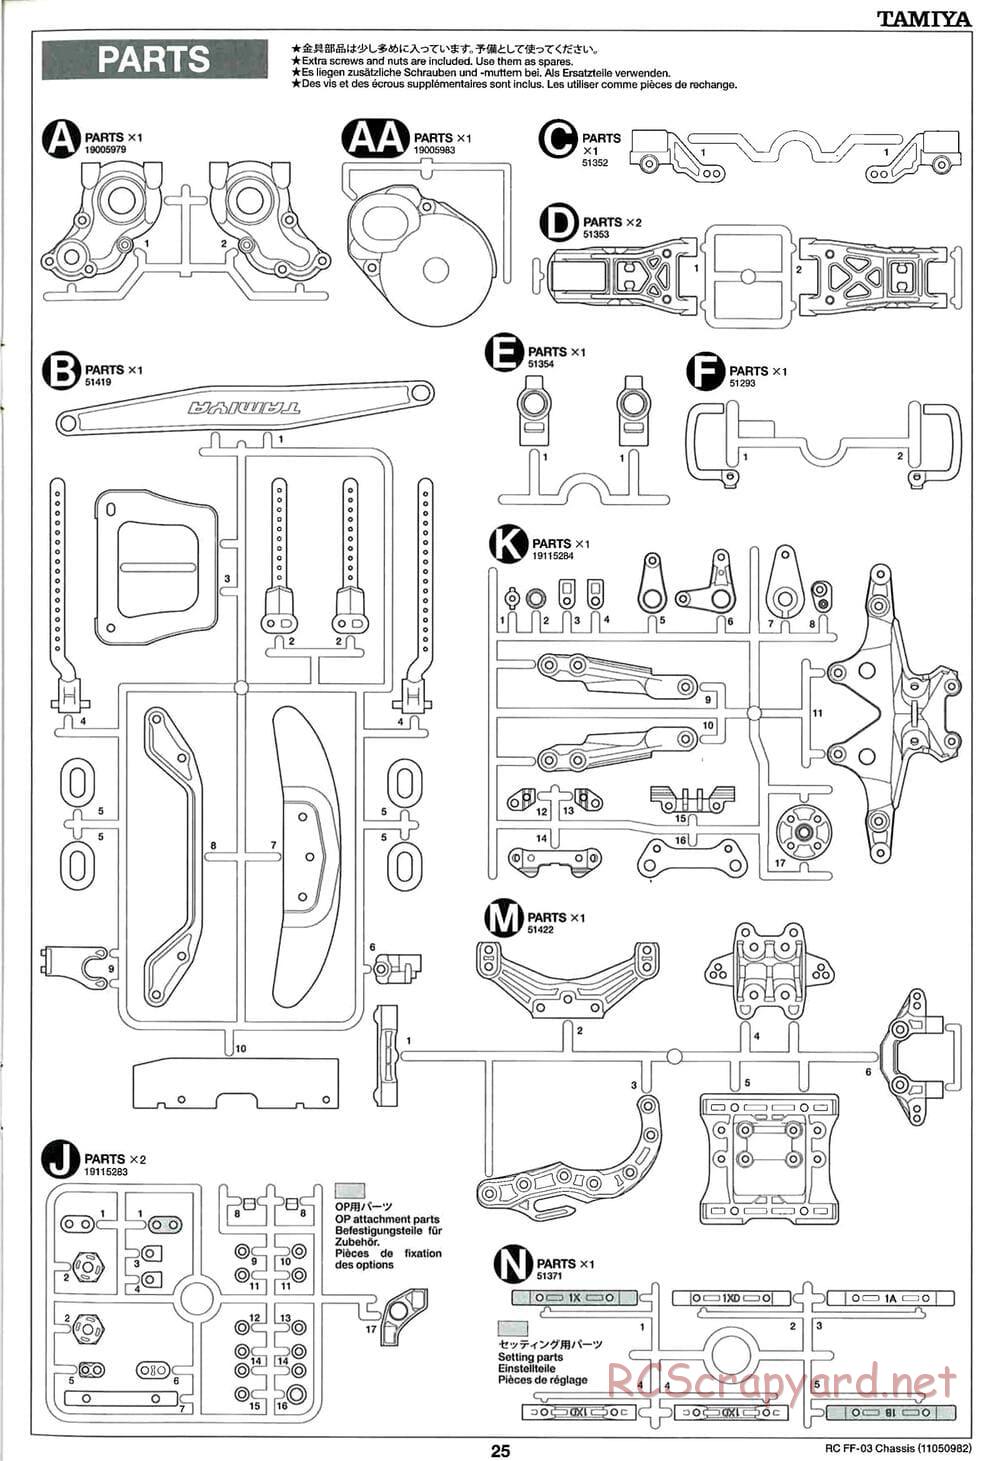 Tamiya - Castrol Honda Civic VTi - FF-03 Chassis - Manual - Page 25